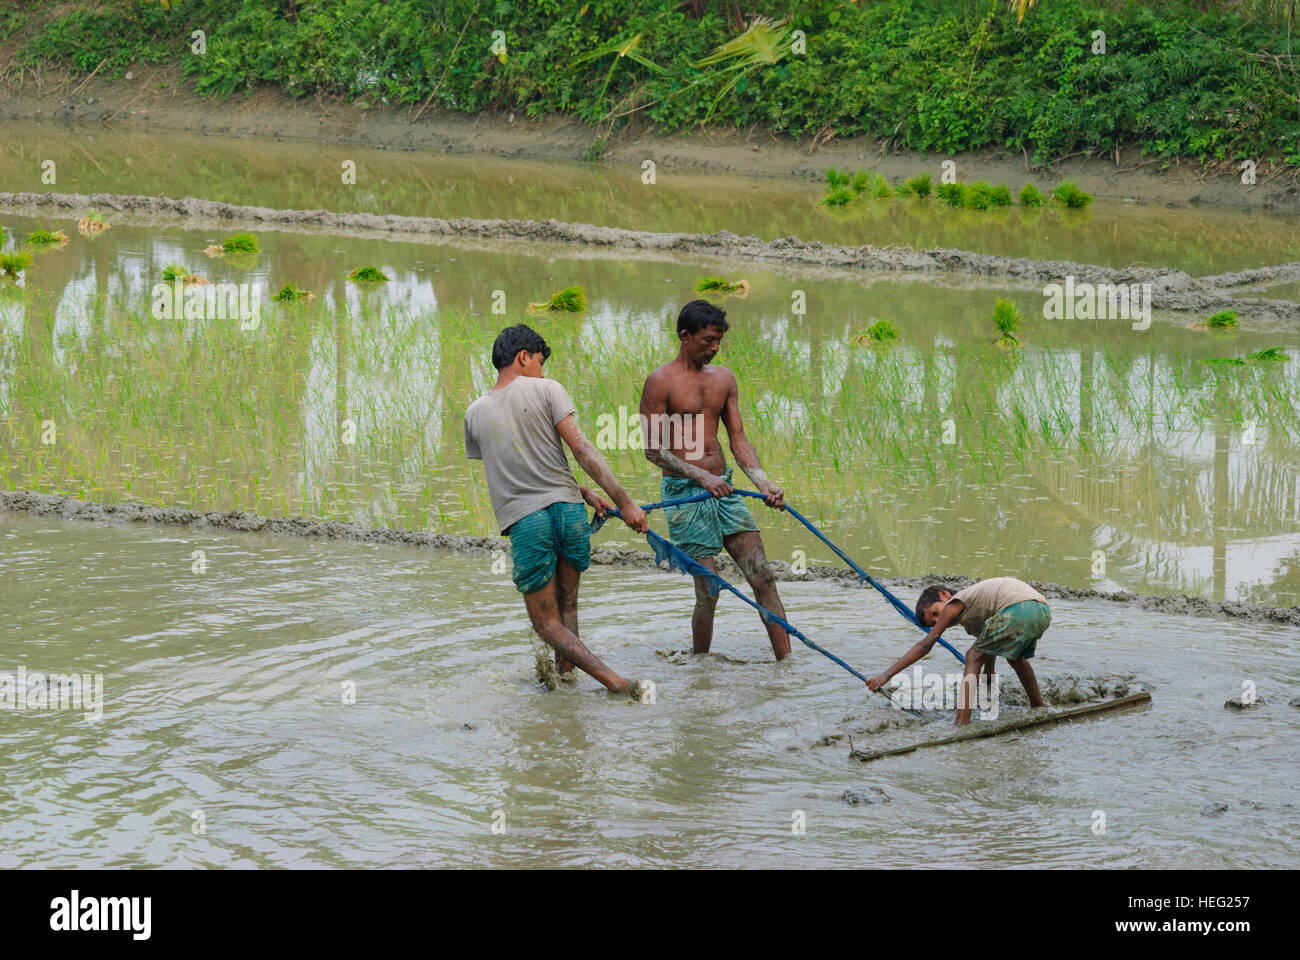 Hariargup: Plowing a rice field, Khulna Division, Bangladesh Stock Photo